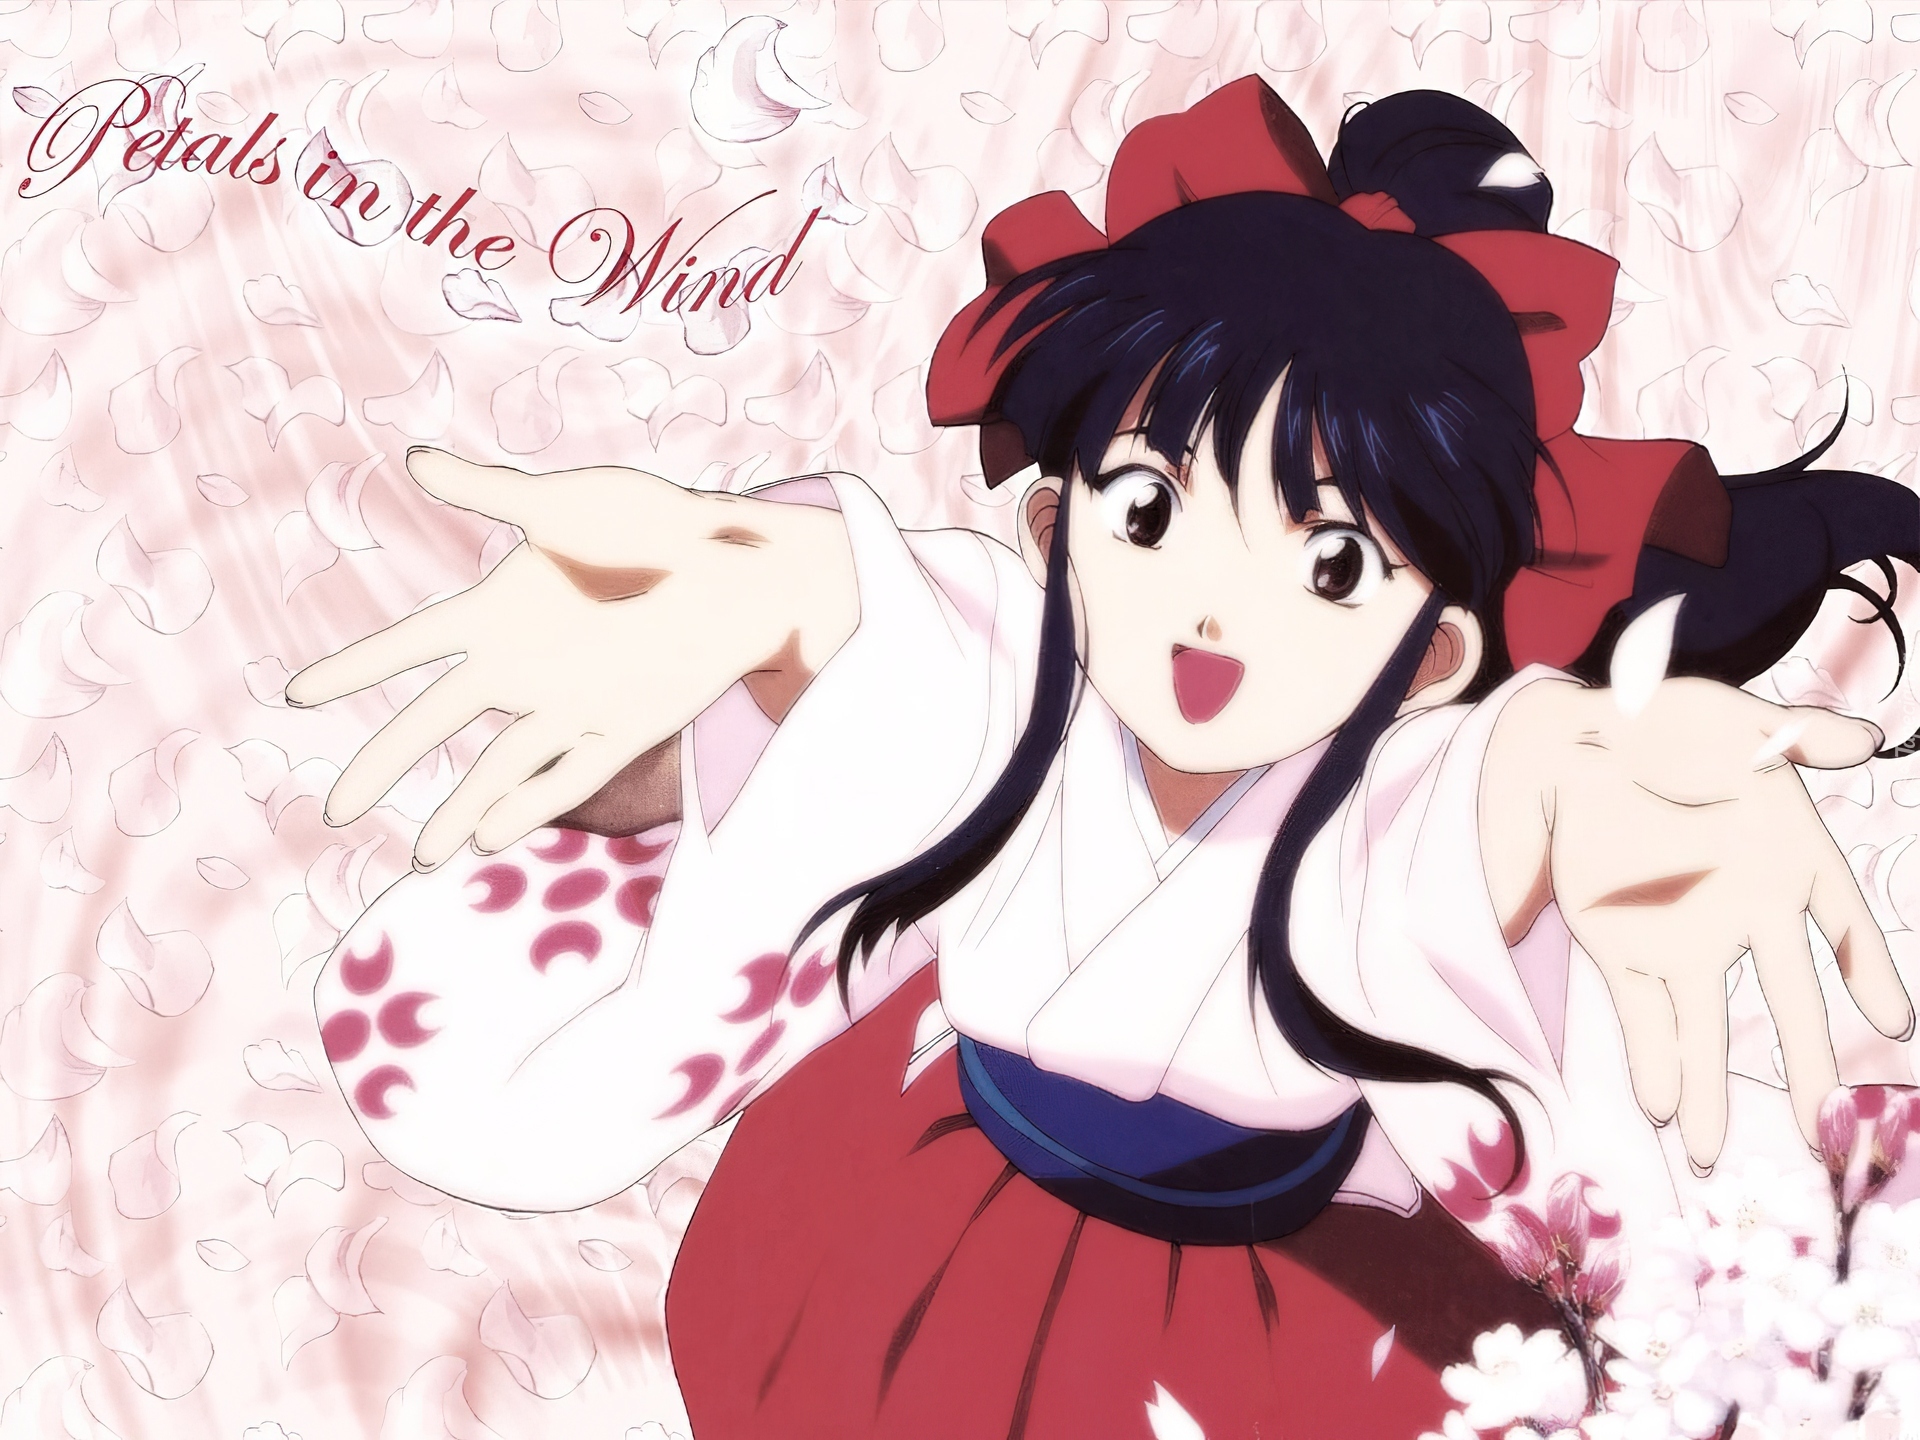 Sakura Wars,biała bluzka, czerwona spódnica